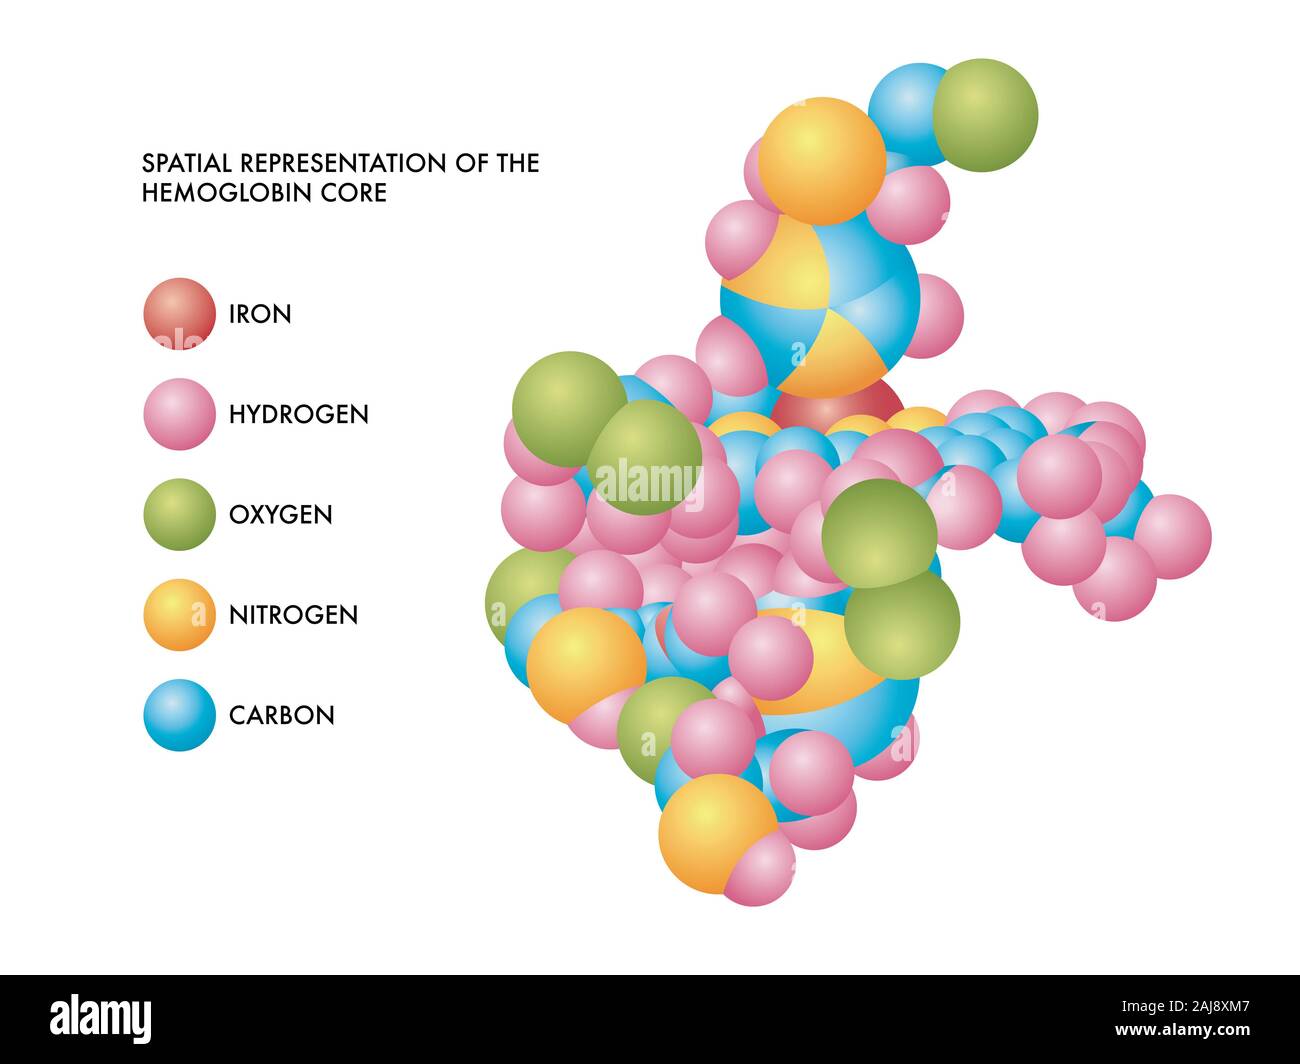 Medizinischen Abbildung des Hämoglobins Kern räumliche Darstellung mit Molekülen aus Eisen, Wasserstoff, Sauerstoff, Stickstoff und Kohlenstoff in farbige Formen. Stockfoto